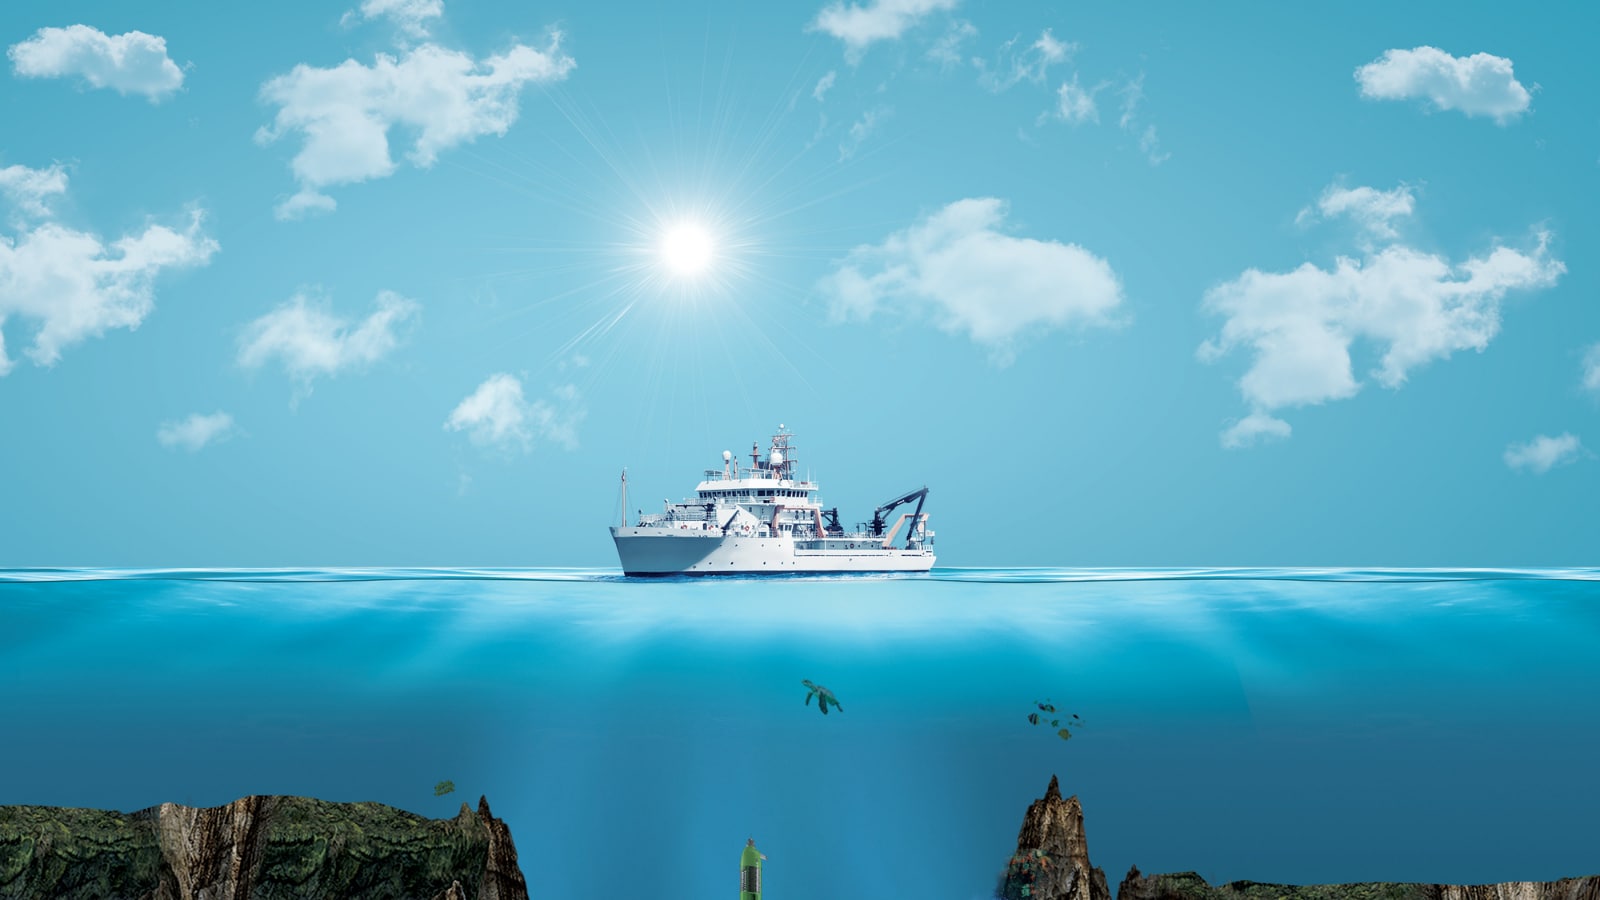 Bermuda Triangle Cruise Promises Refund if Ship and Passengers Vanish